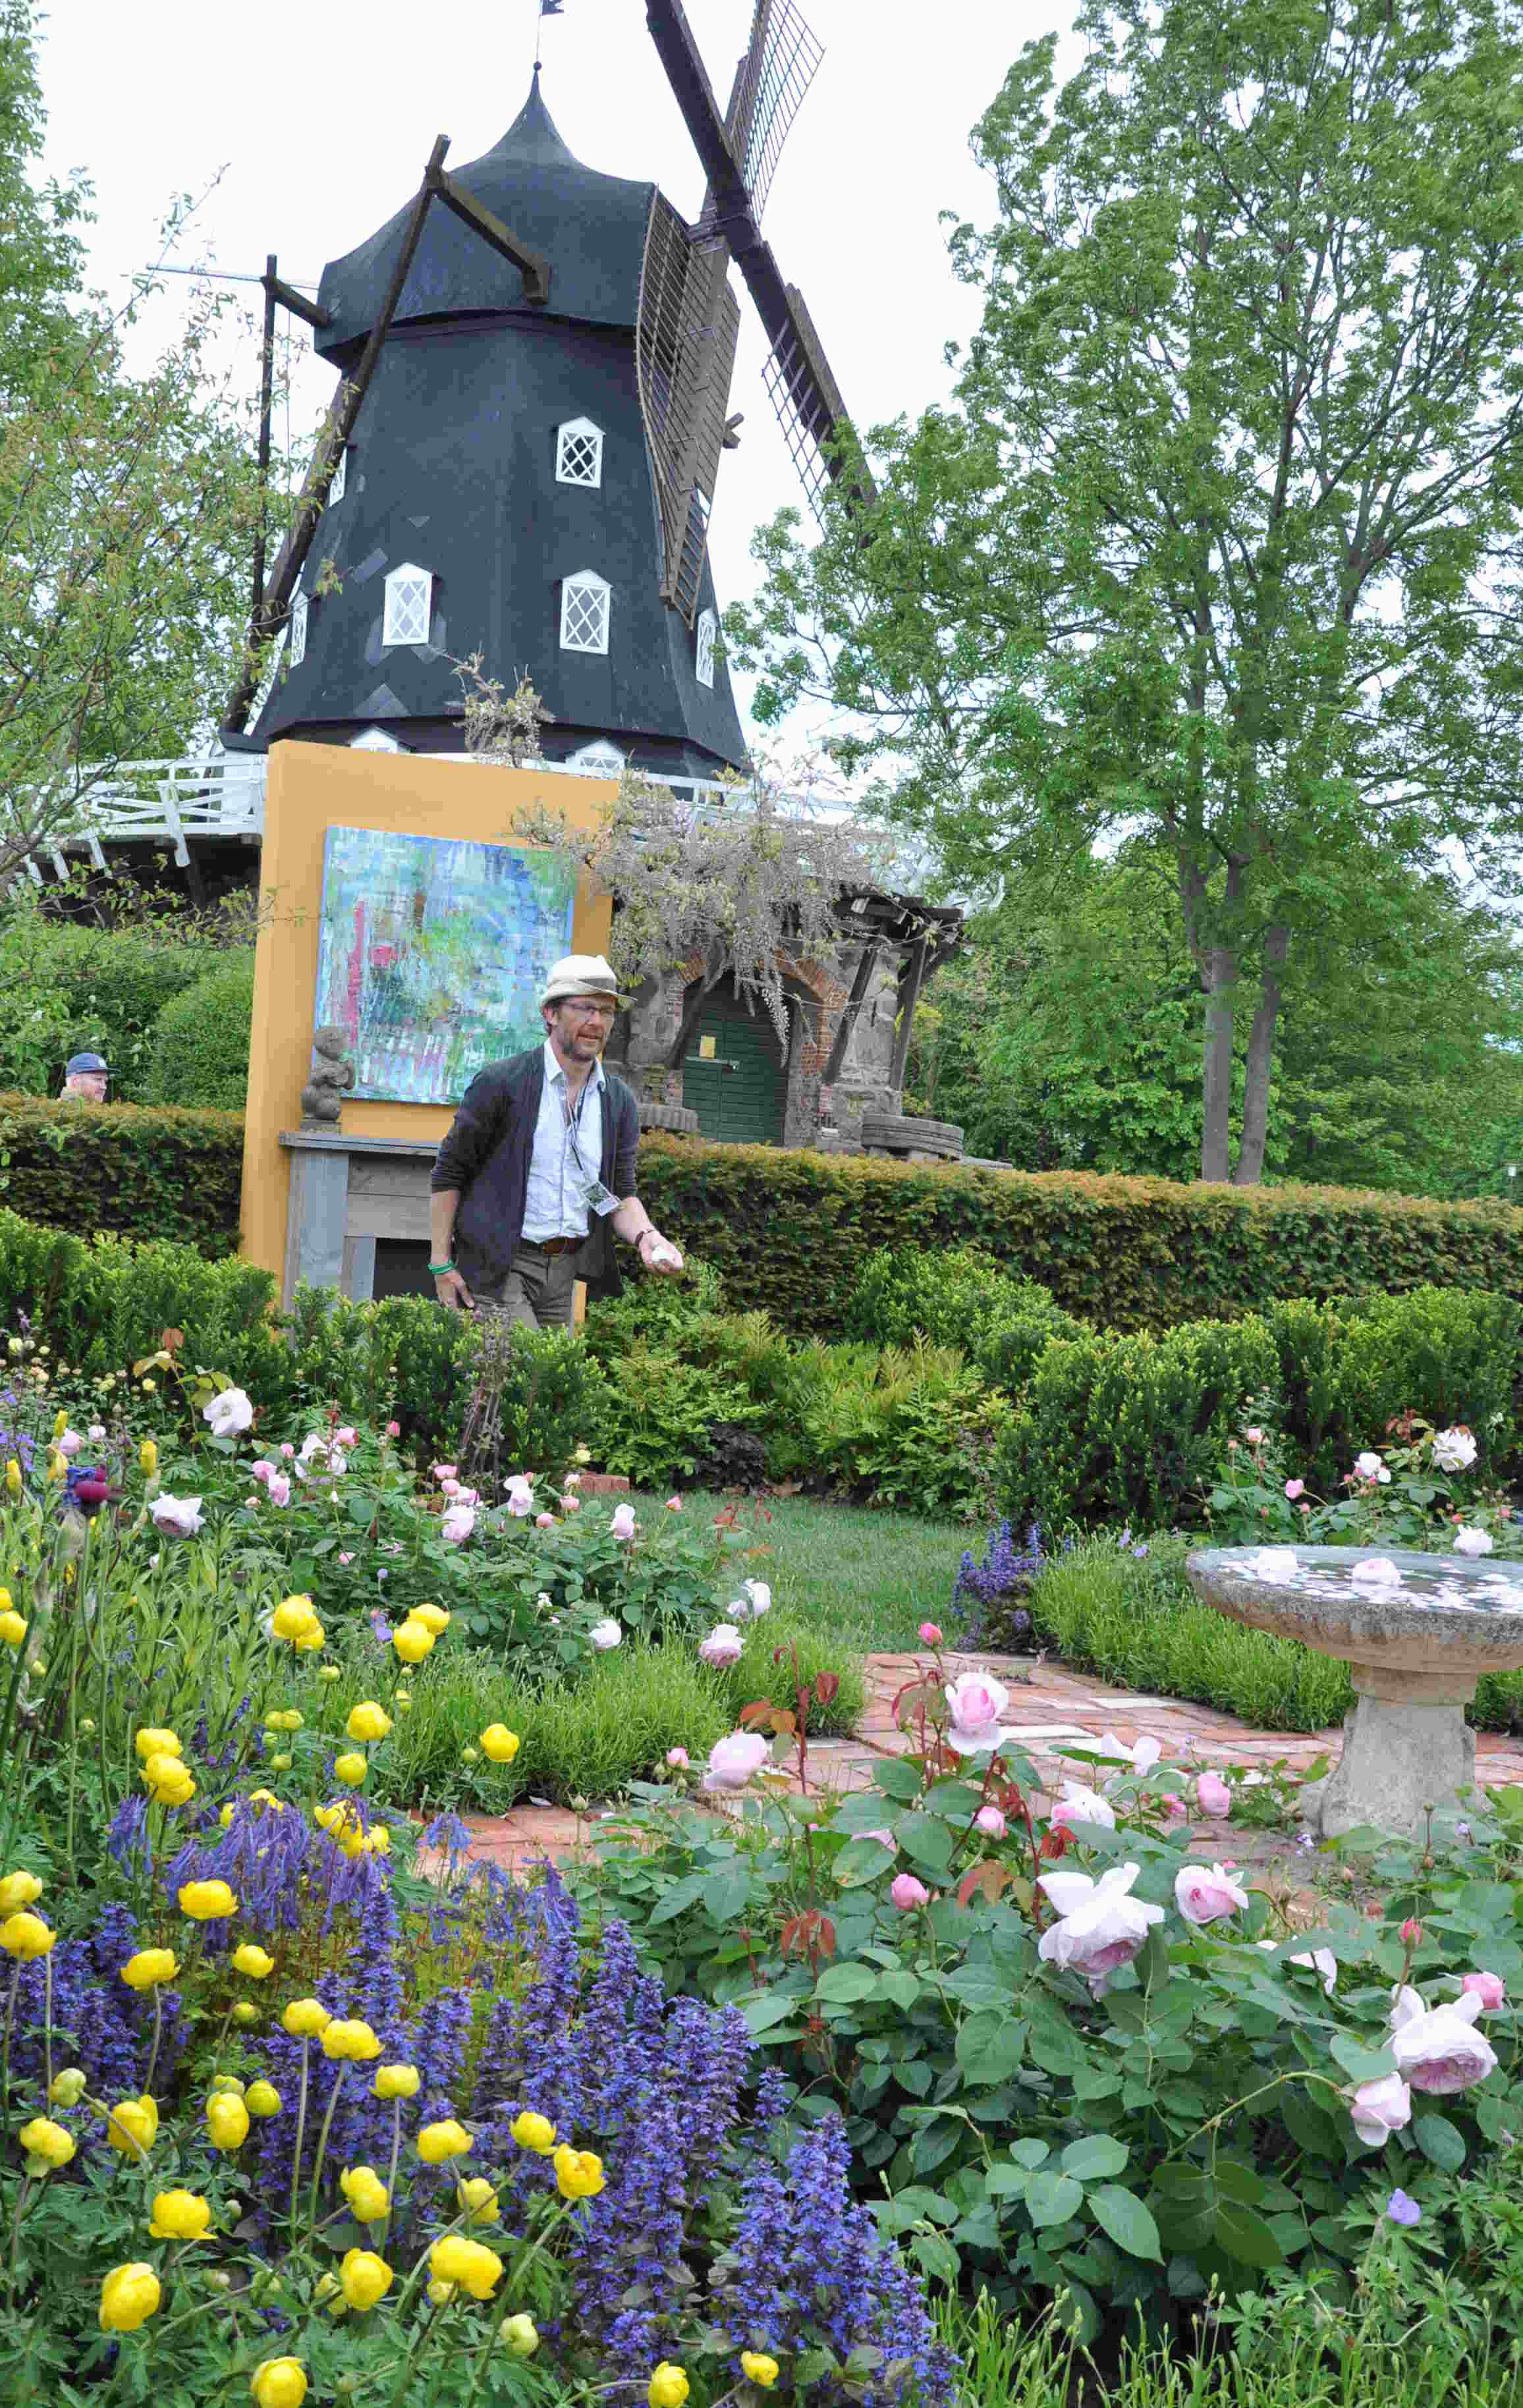 Konstnärens trädgård visade både måleri och blomsterkonst i engelsk stil.